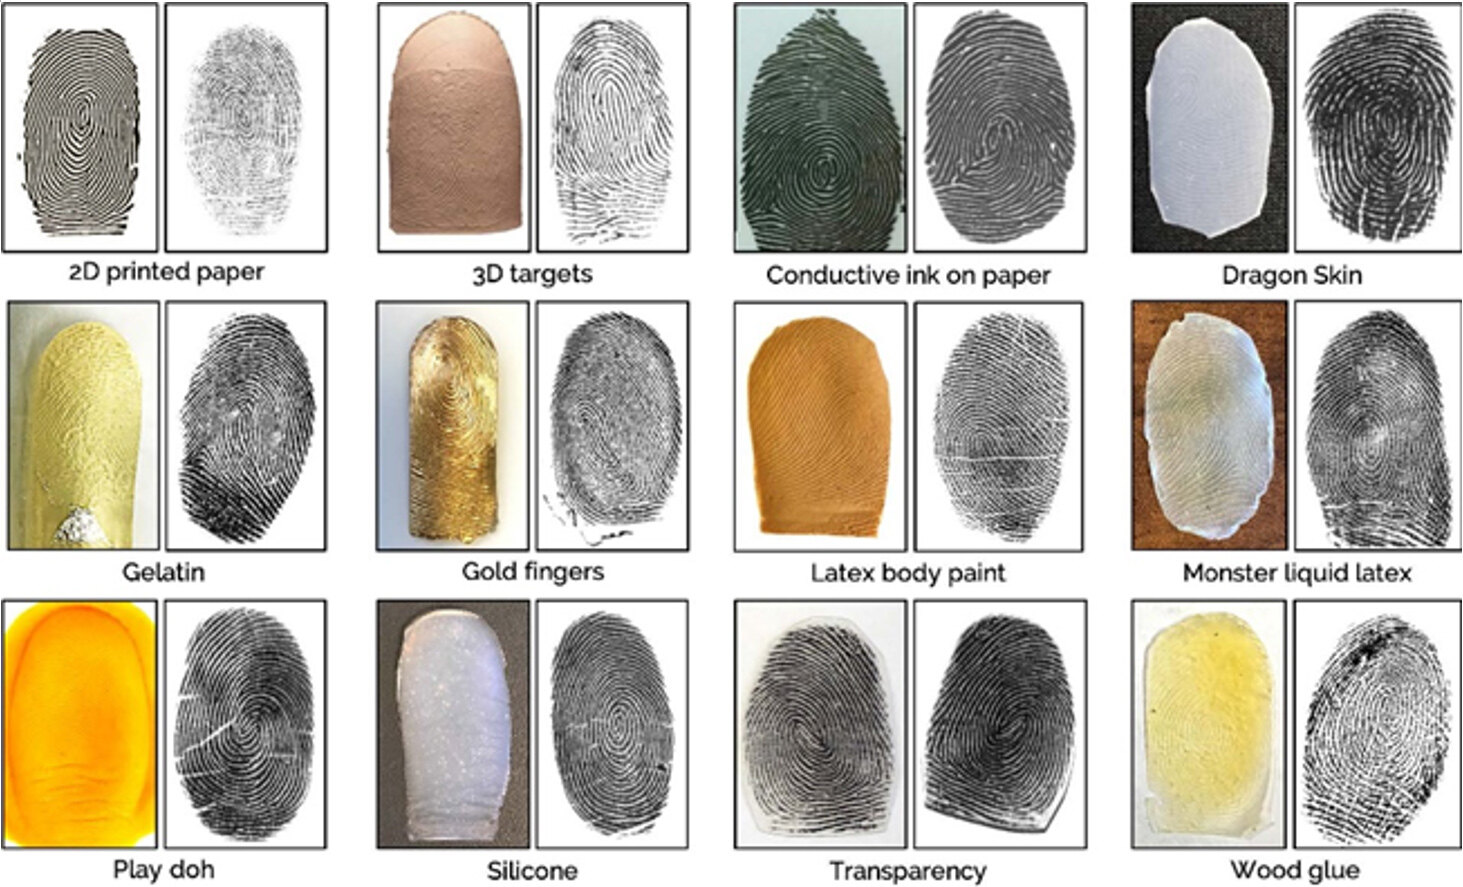 A comprehensive survey of fingerprint presentation attack detection